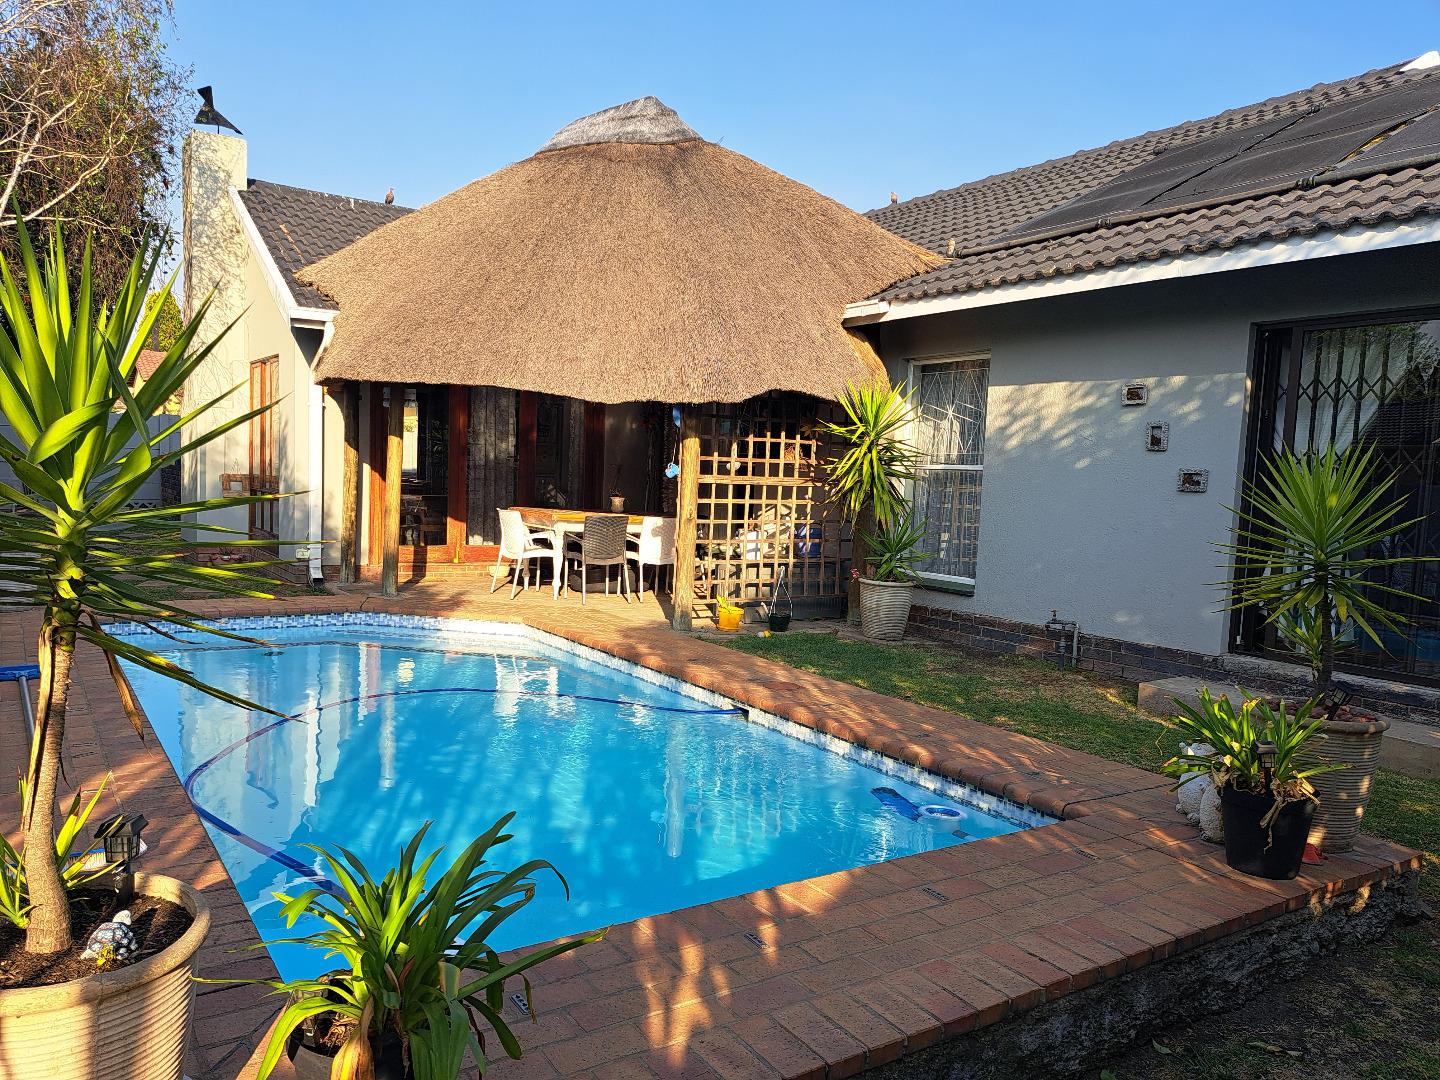 4 Bedroom House for Sale - Mpumalanga